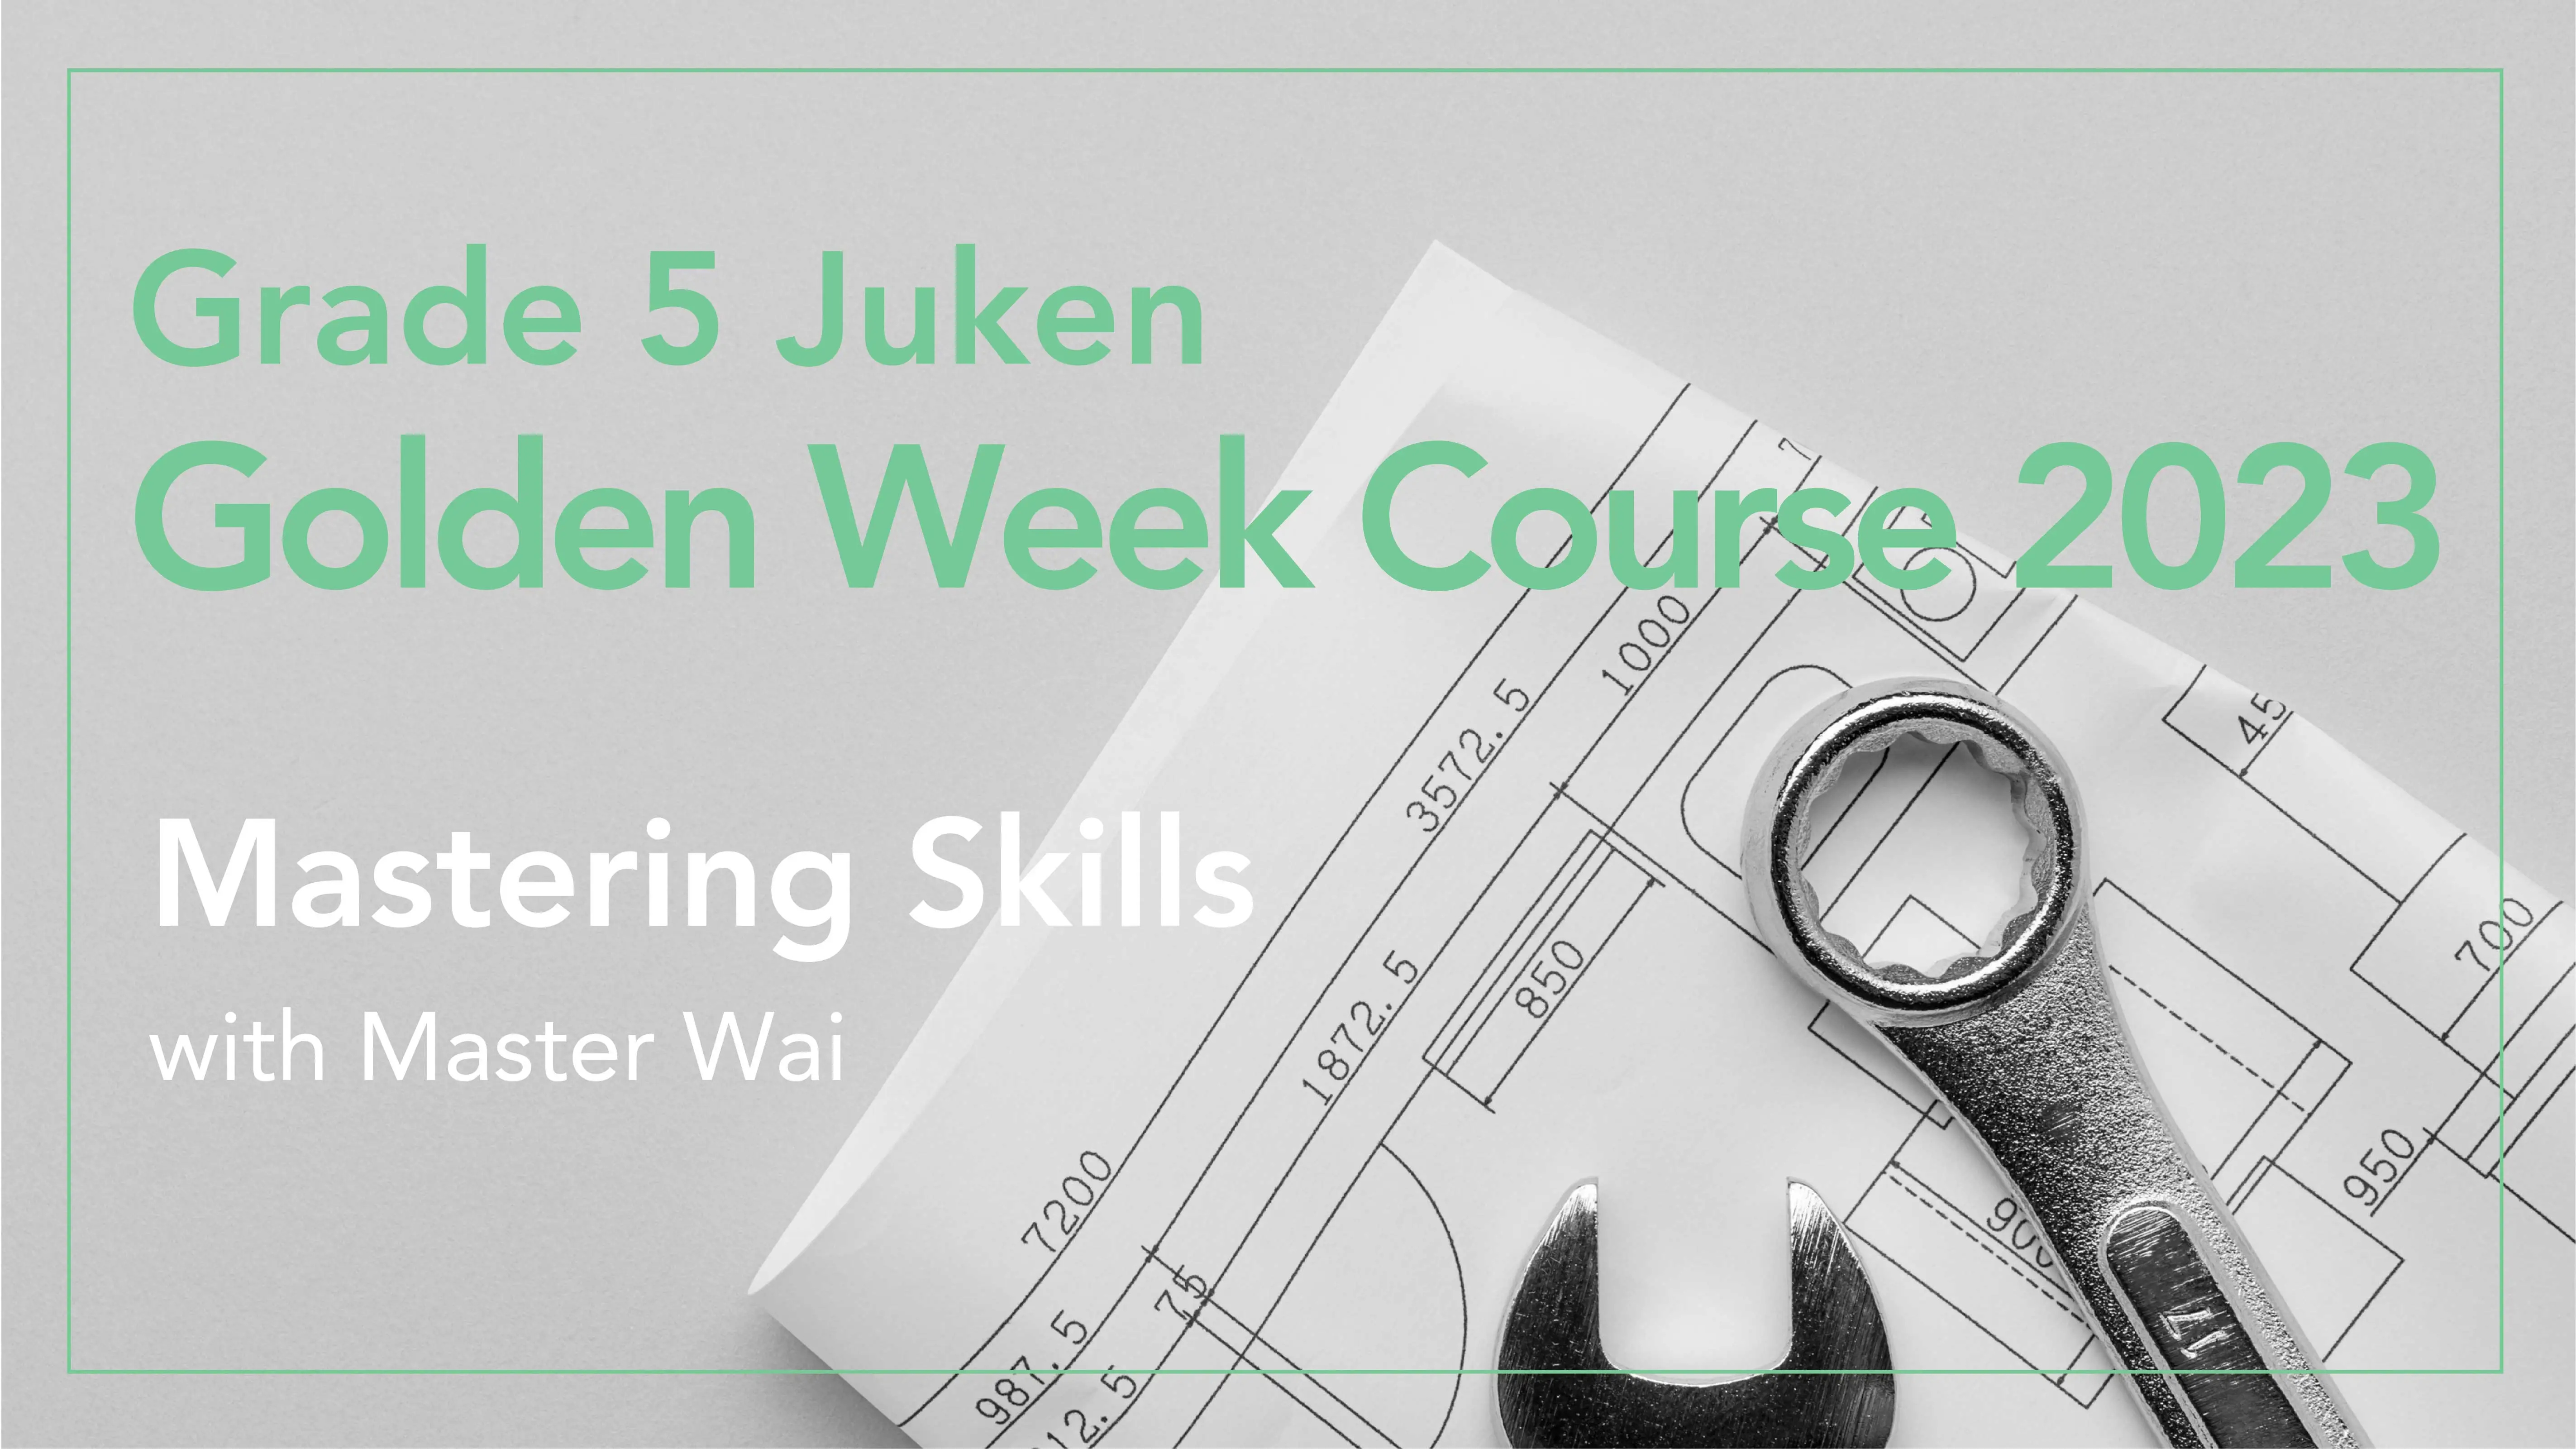 Grade 5 Juken: Golden Week Course 2023